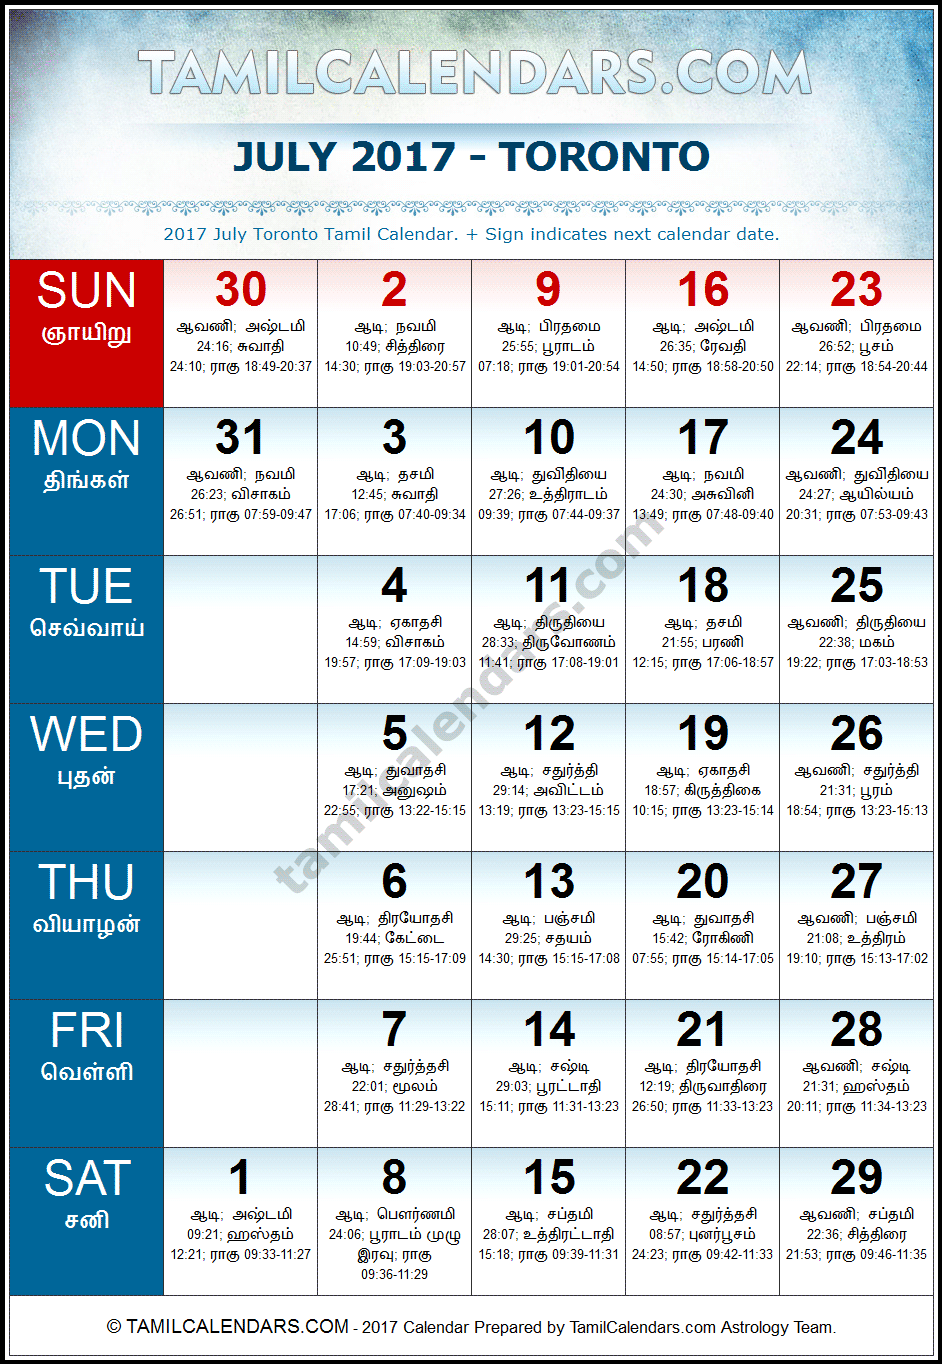 July 2017 Tamil Calendar for Toronto, Canada